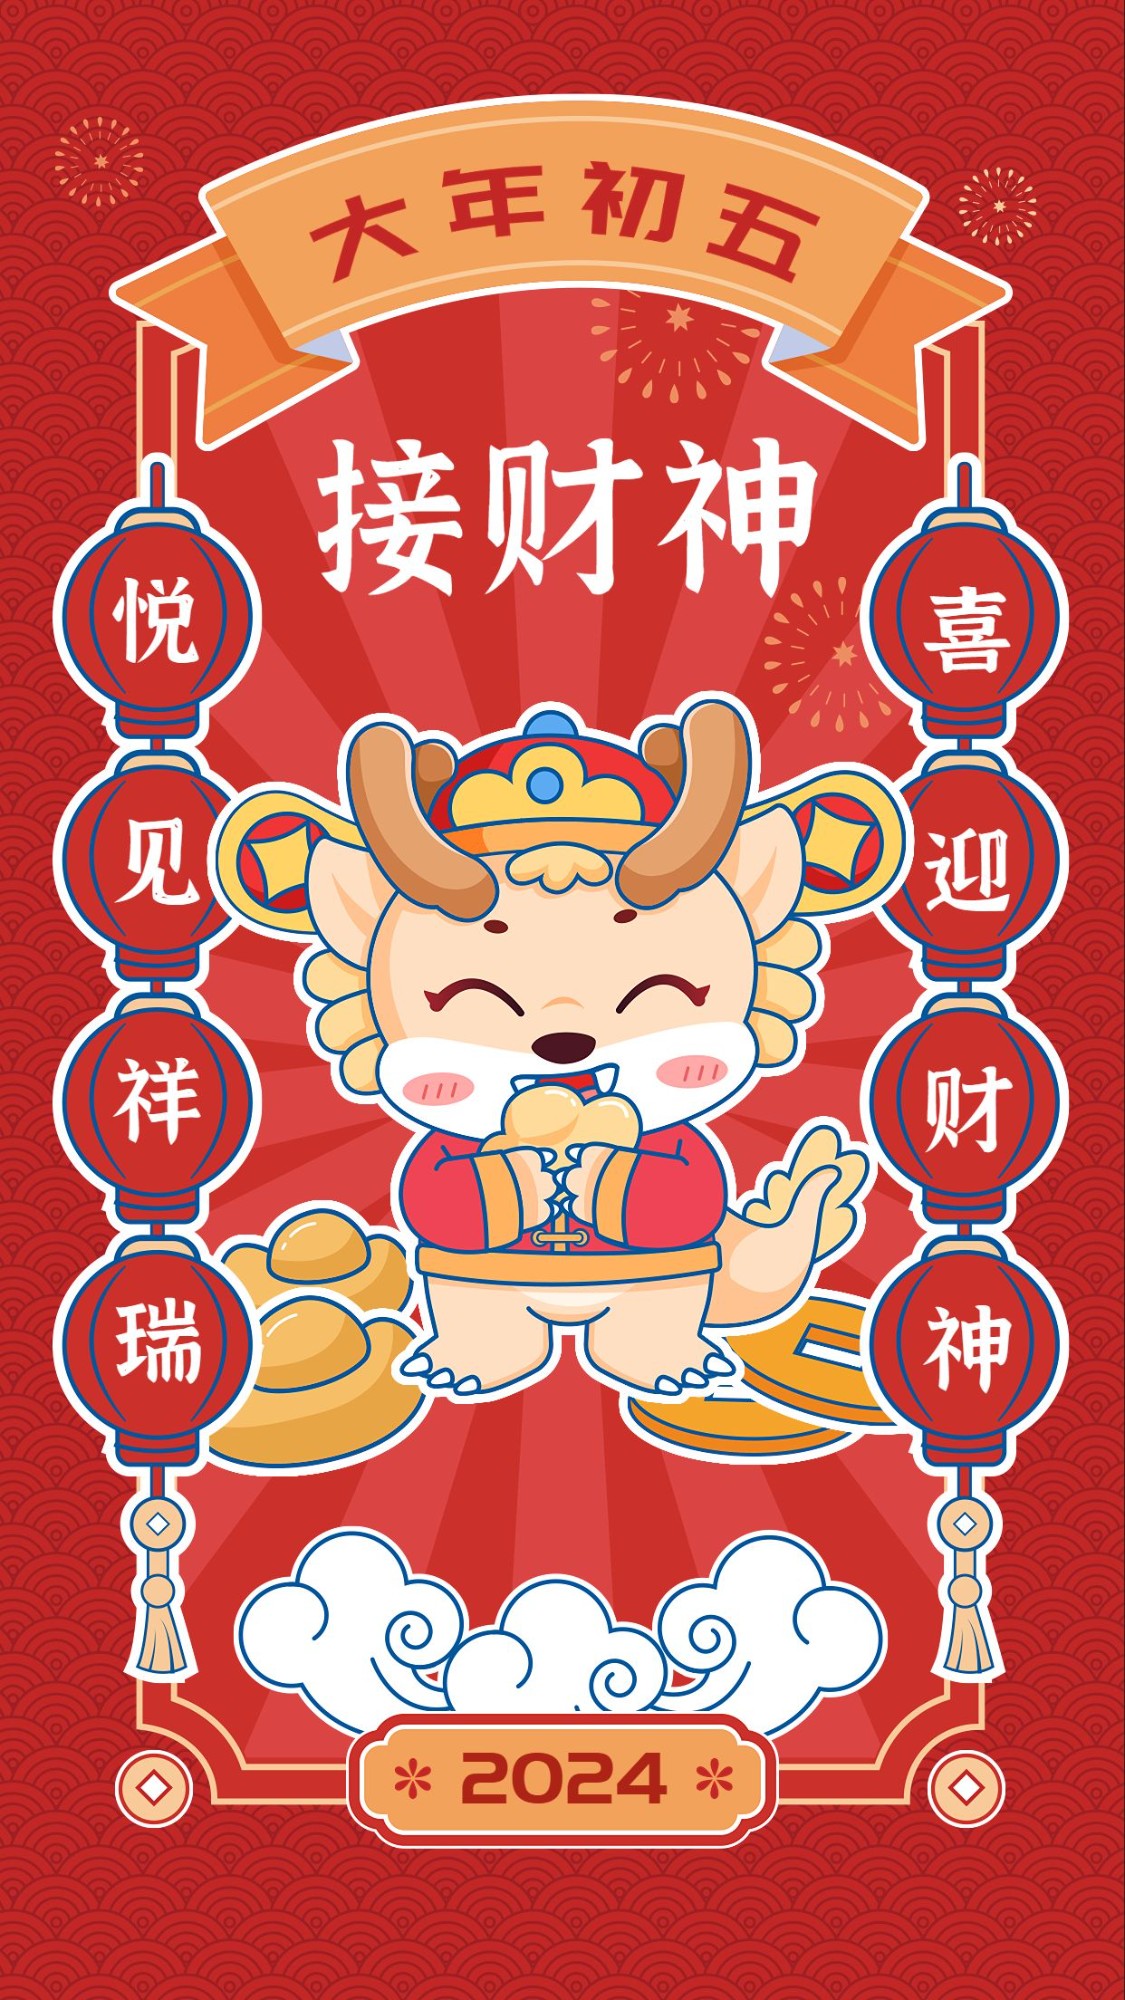 教育培训春节祝福大年初五迎财神可爱中国风插画手机海报